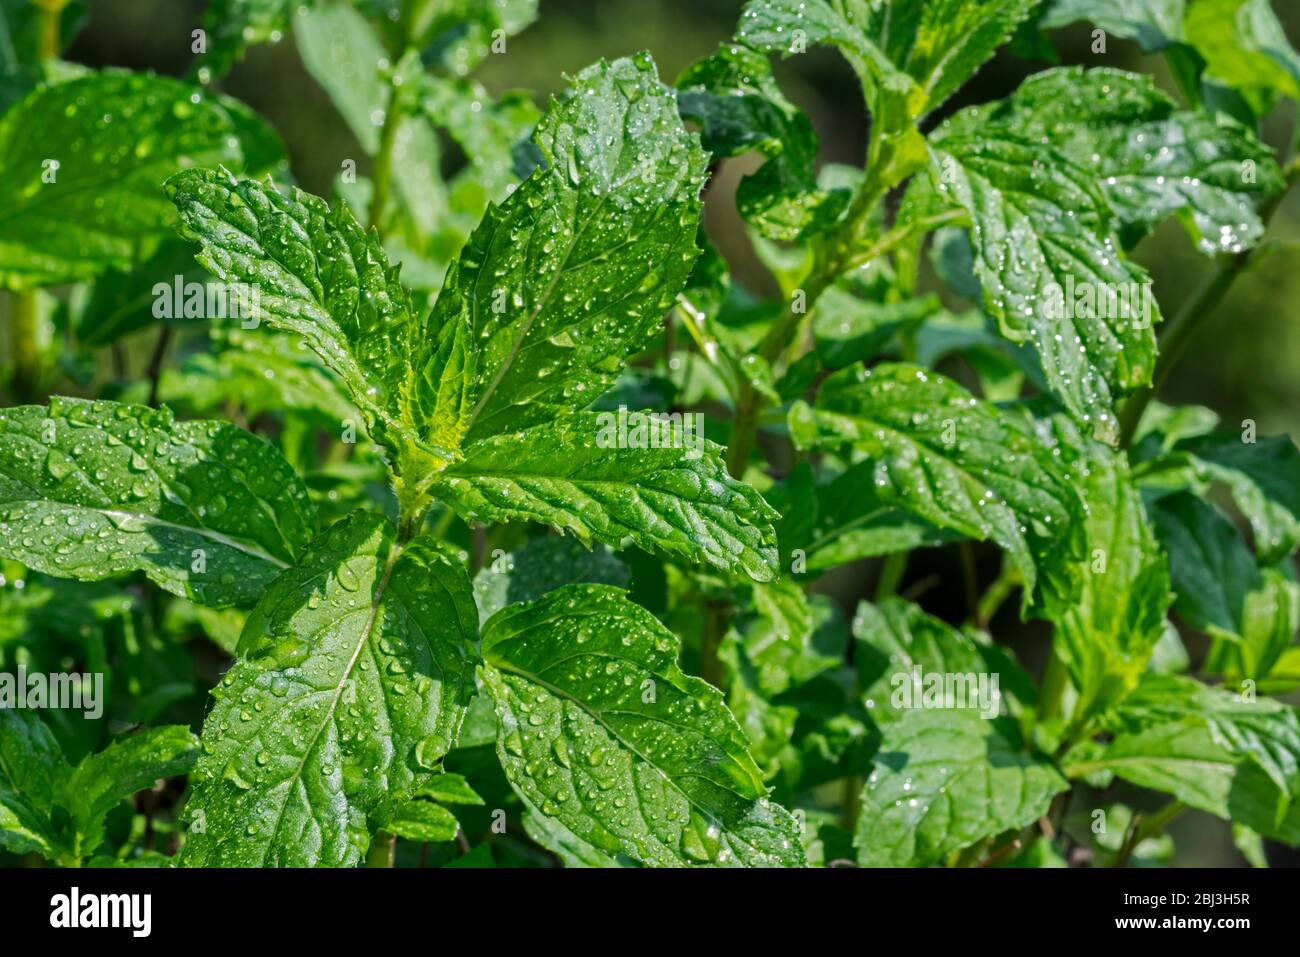 Nahaufnahme von nassen grünen Blättern der Pfefferminze (Mentha x piperita Swiss) Hybrid-Minze, Kreuzung zwischen Wasserminze und Spearminze Stockfoto